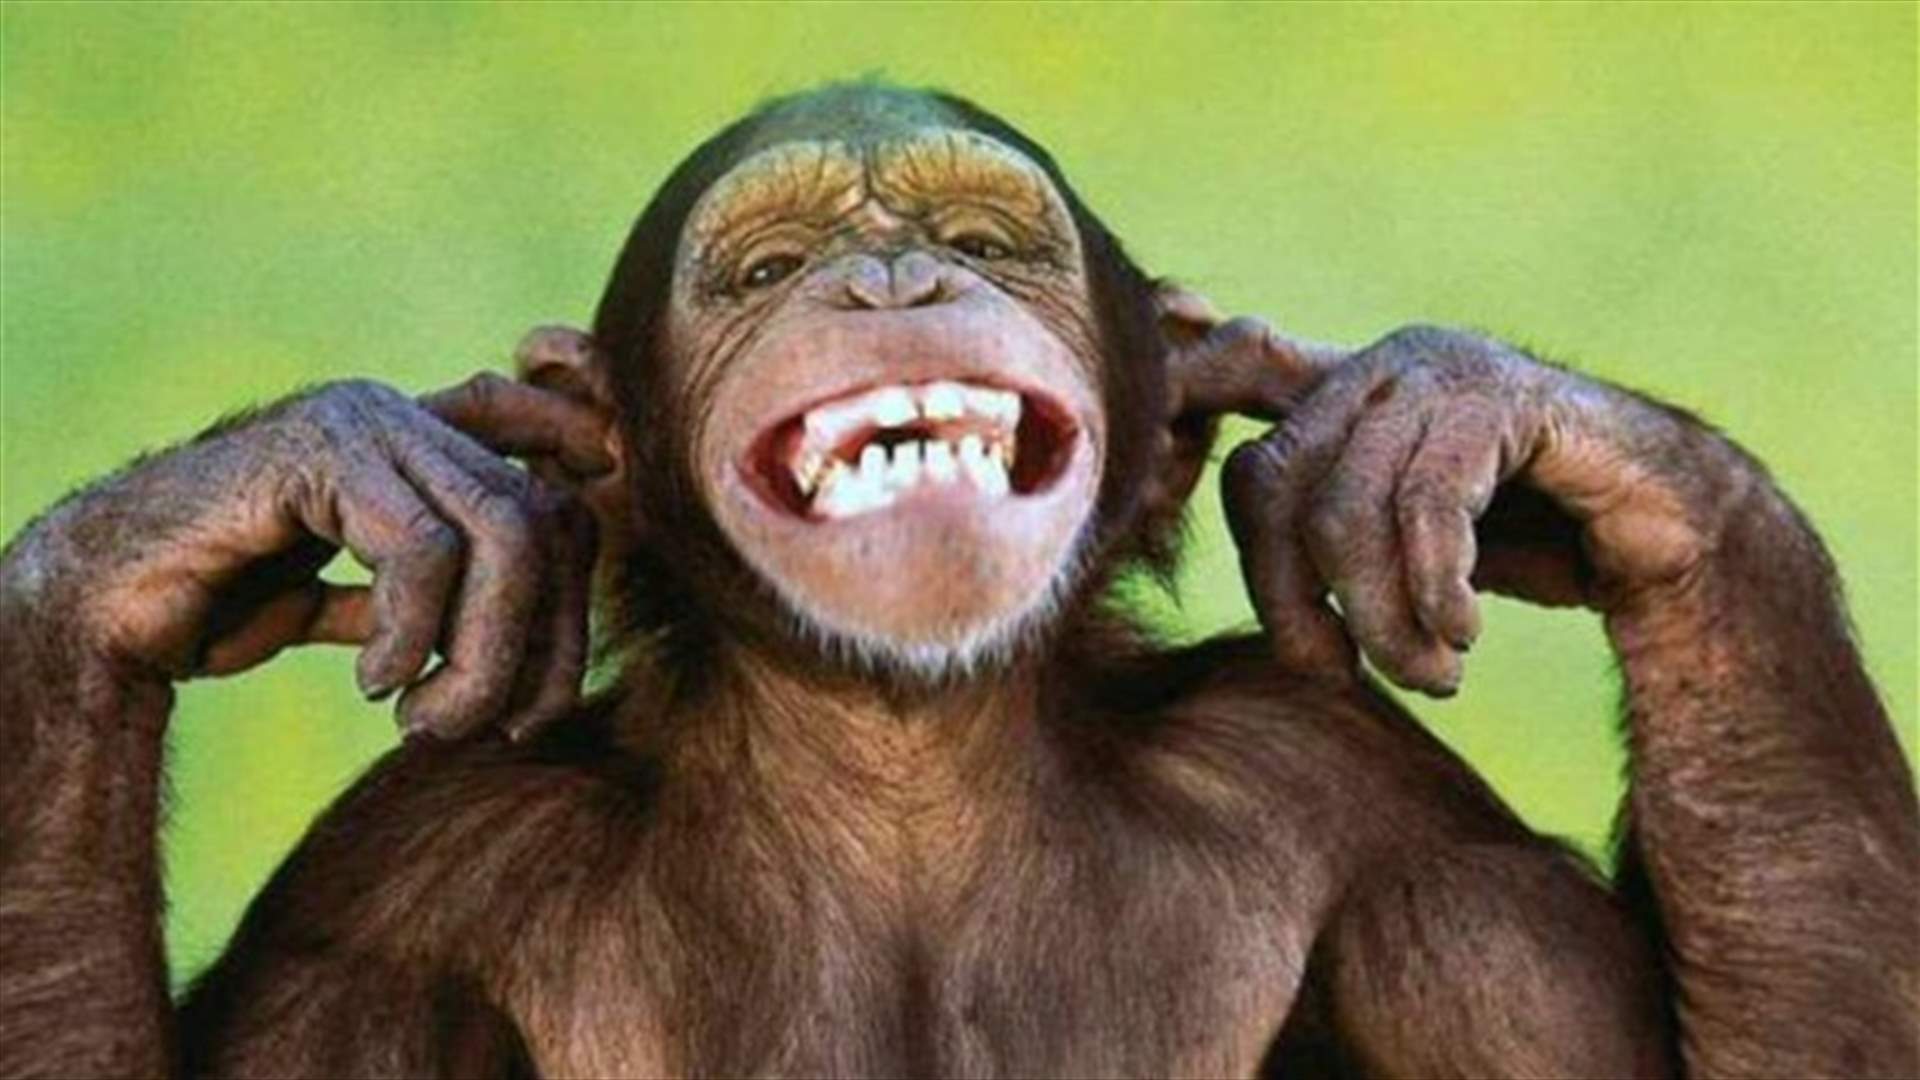 فيديو لقرد بوجهٍ بشري يجتاح الانترنت... وأكثر من مليون مشاهدة!